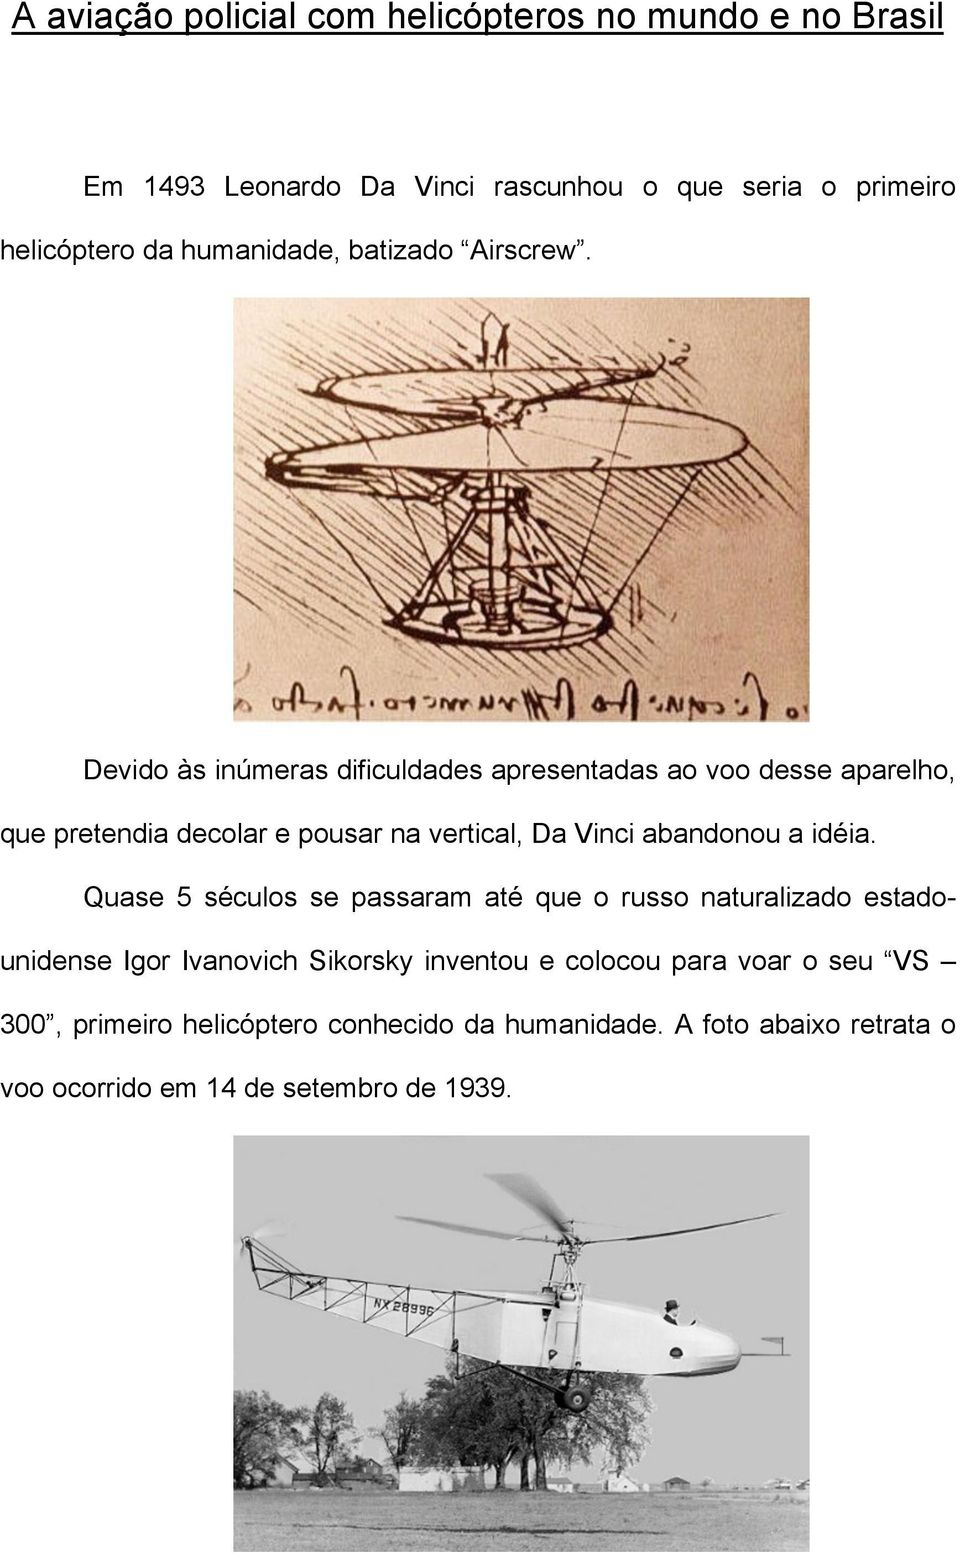 Devido às inúmeras dificuldades apresentadas ao voo desse aparelho, que pretendia decolar e pousar na vertical, Da Vinci abandonou a